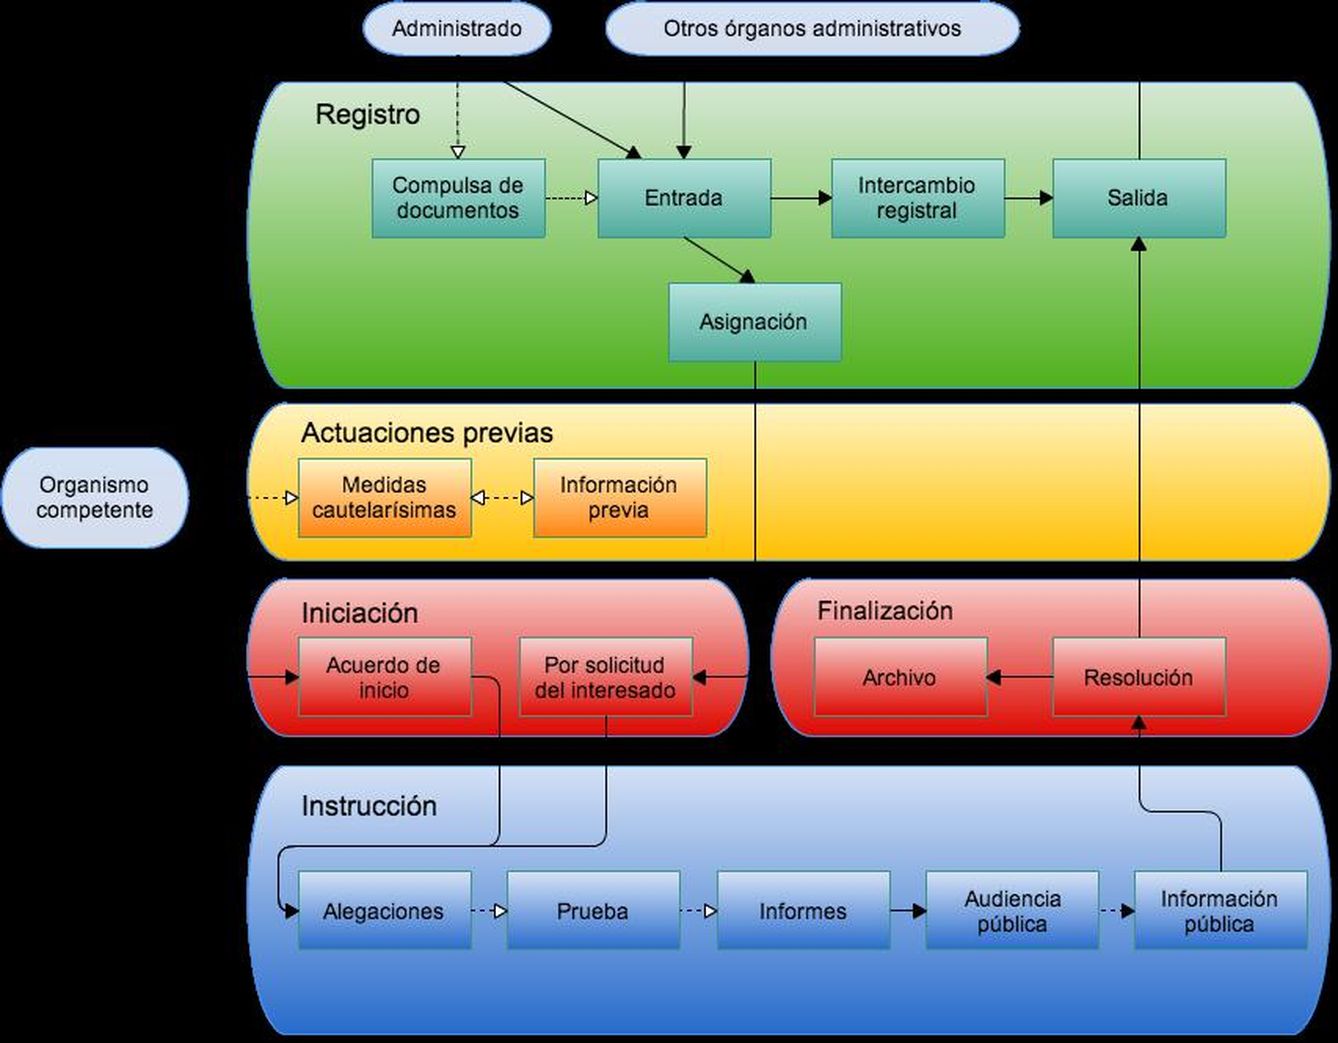 Diagrama de flujo de gestión de expedientes en el ámbito de las Administraciones Públicas. (Autor: José Manuel Sánchez Suárez)